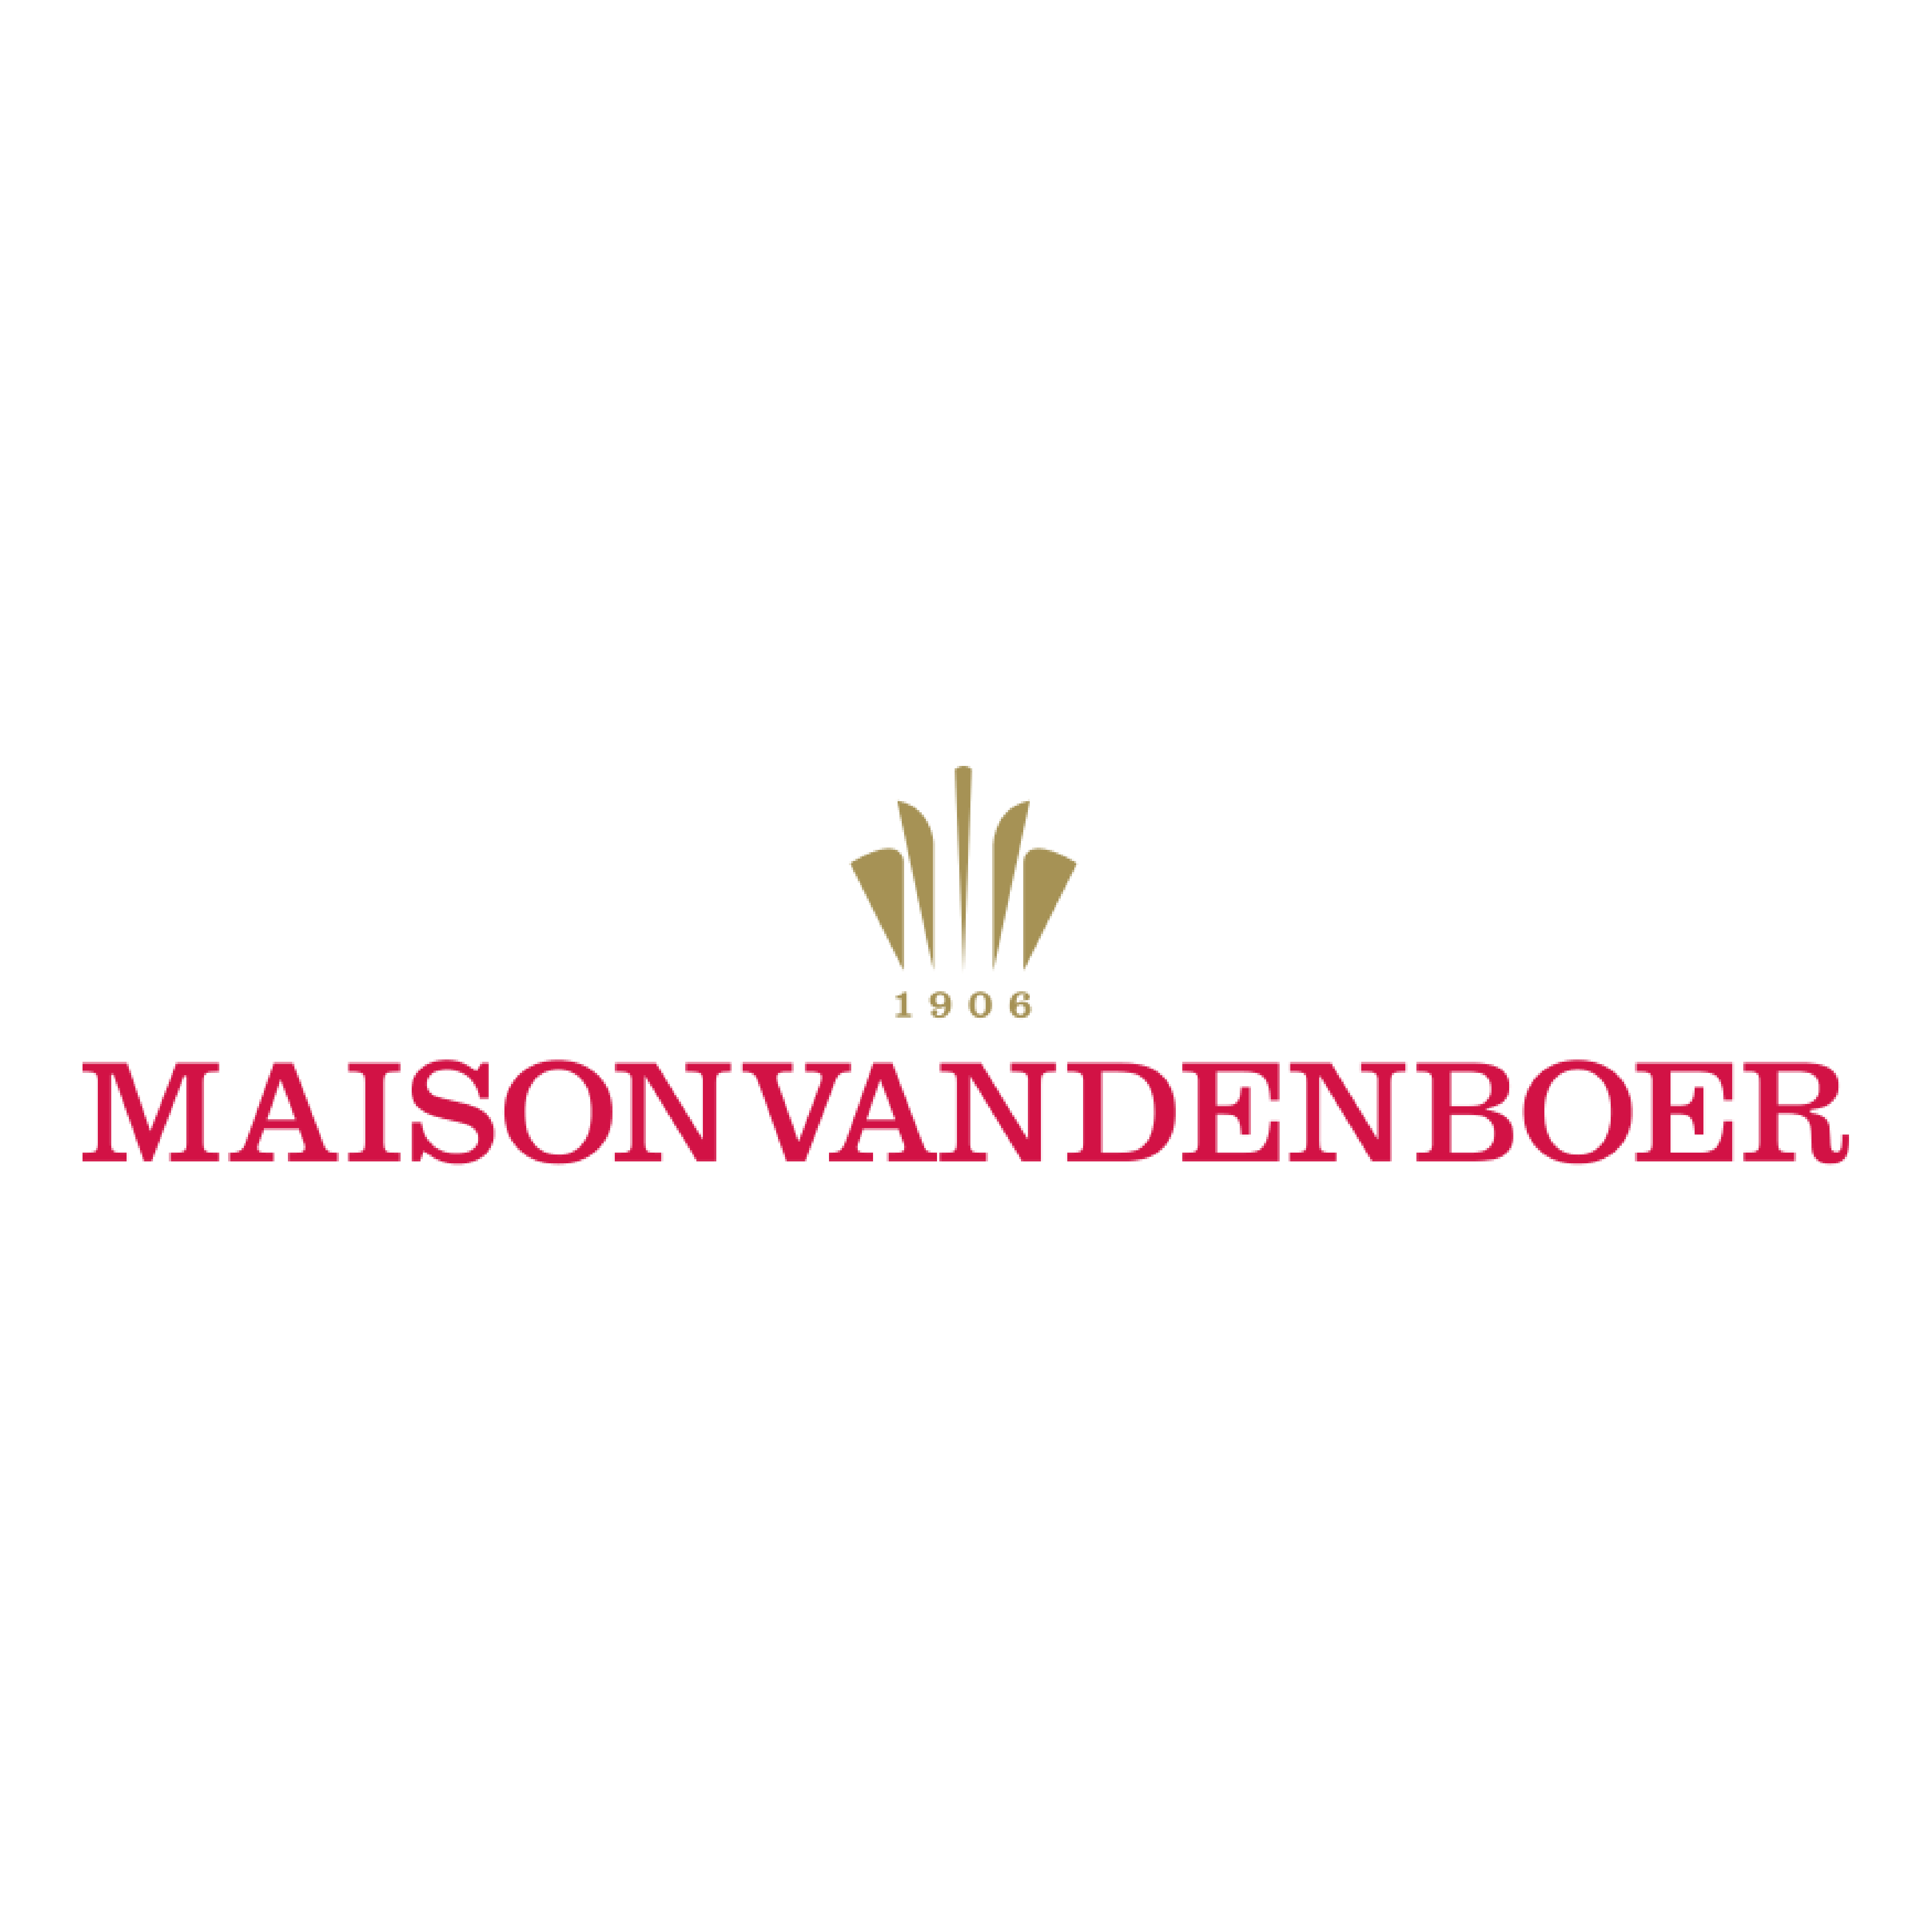 Maison van den Boer